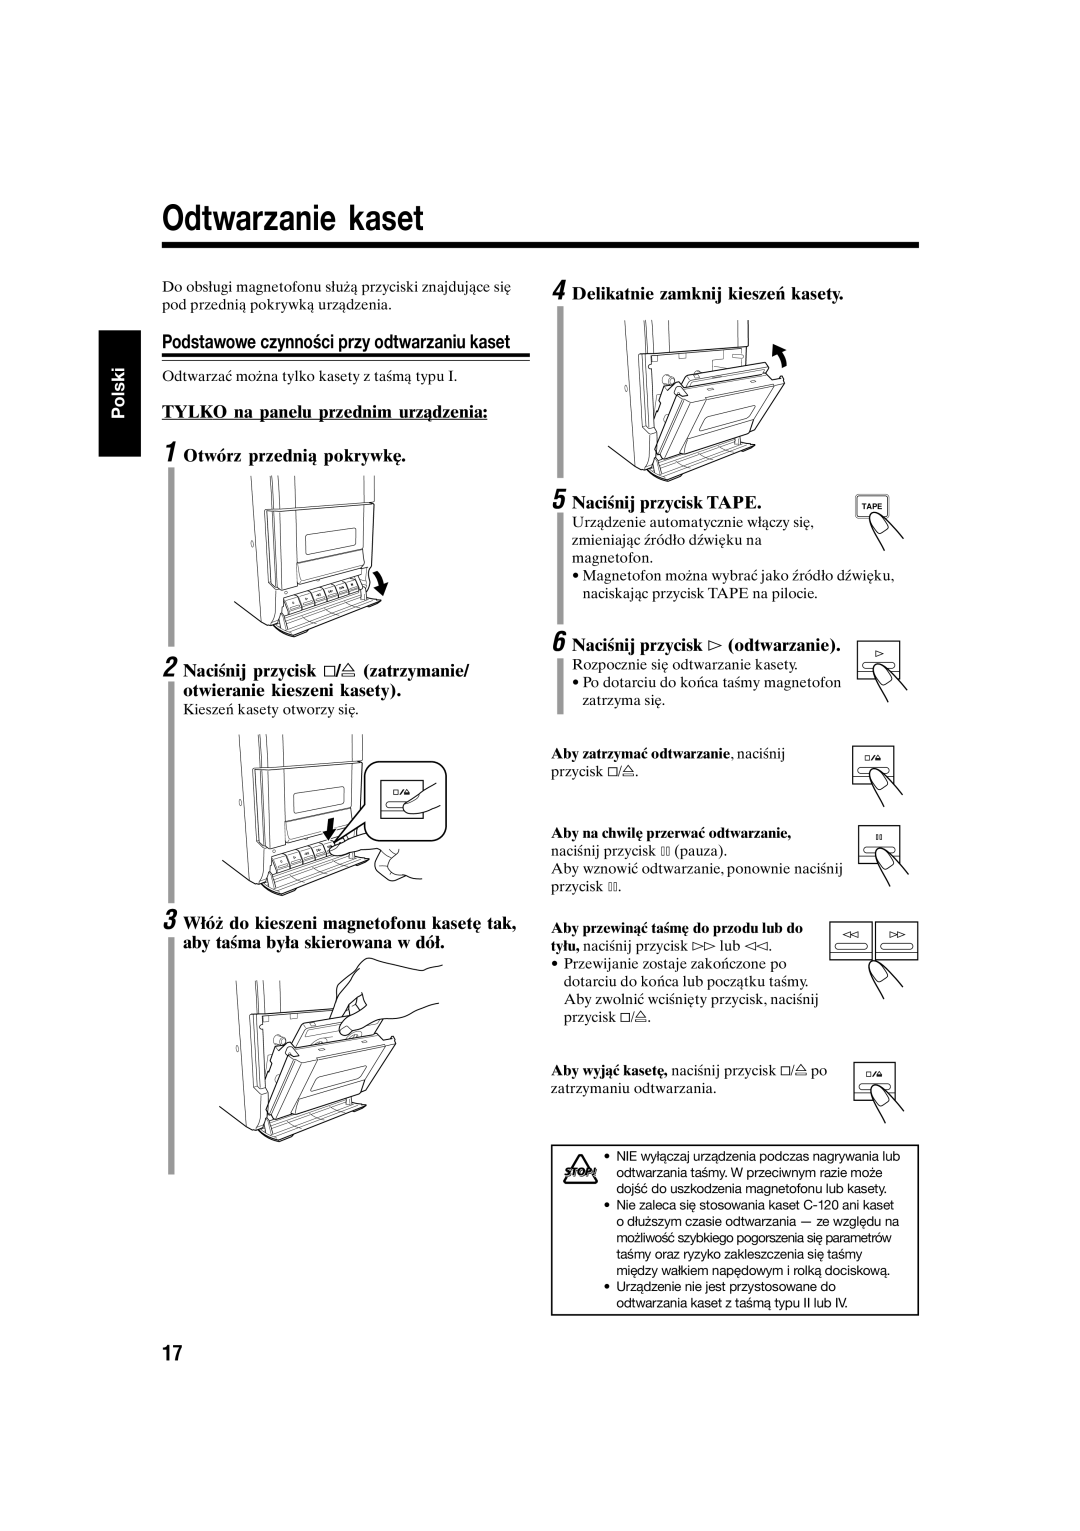 JVC UX-S10 manual Odtwarzanie kaset, Polski, TYLKO na panelu przednim urządzenia, 1 Otwórz przednią pokrywkę 